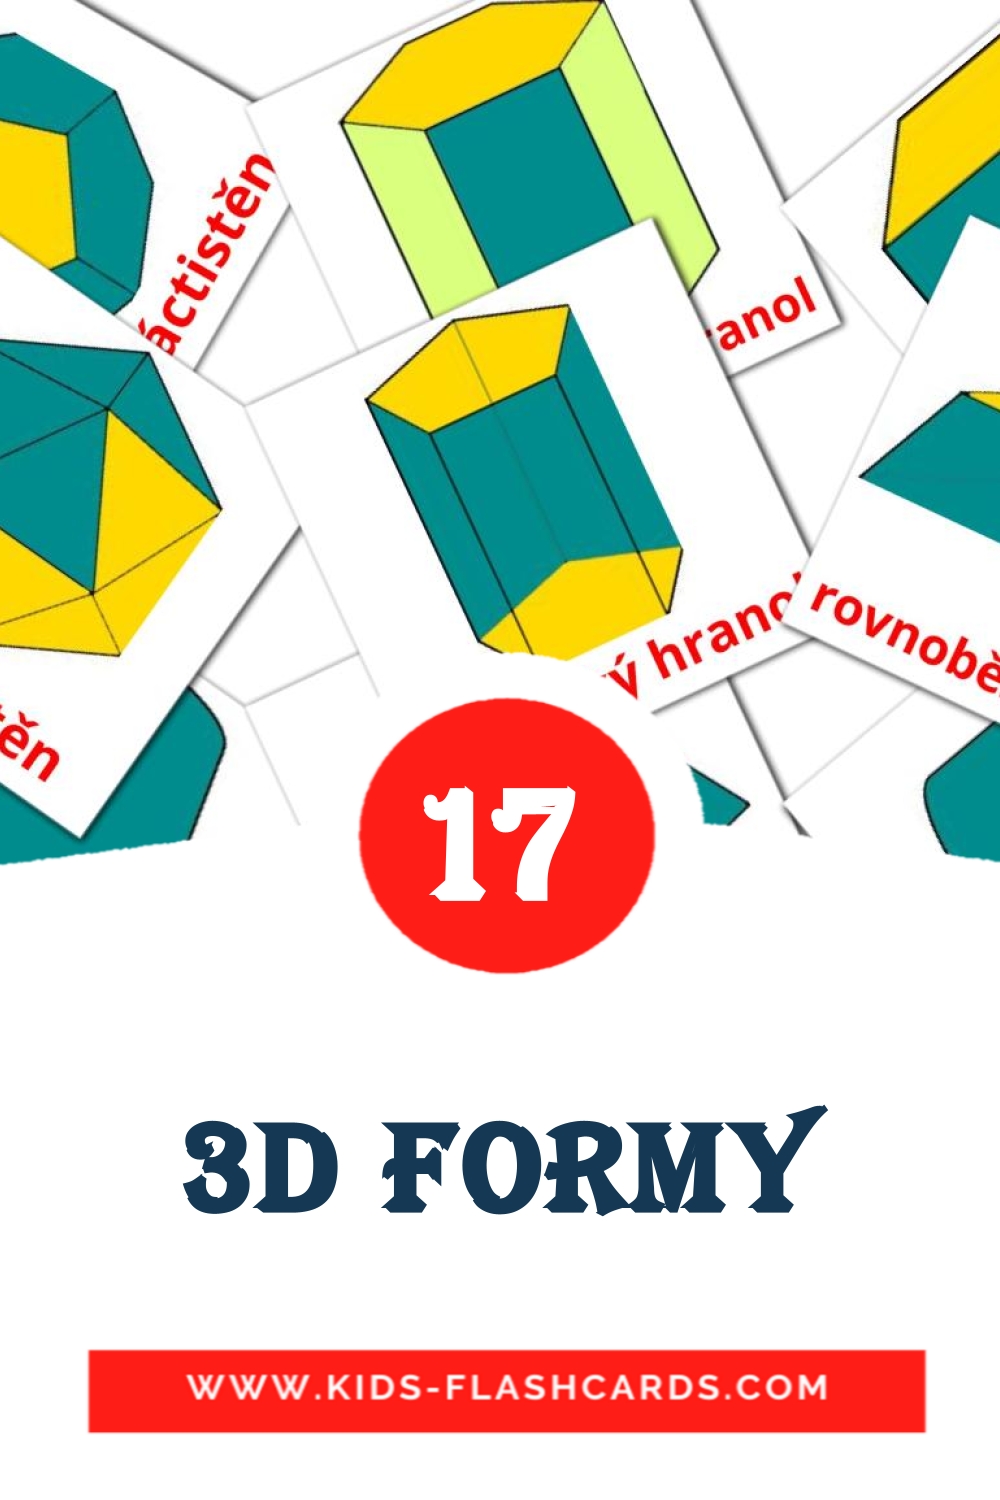 17 cartes illustrées de 3D formy pour la maternelle en tchèque